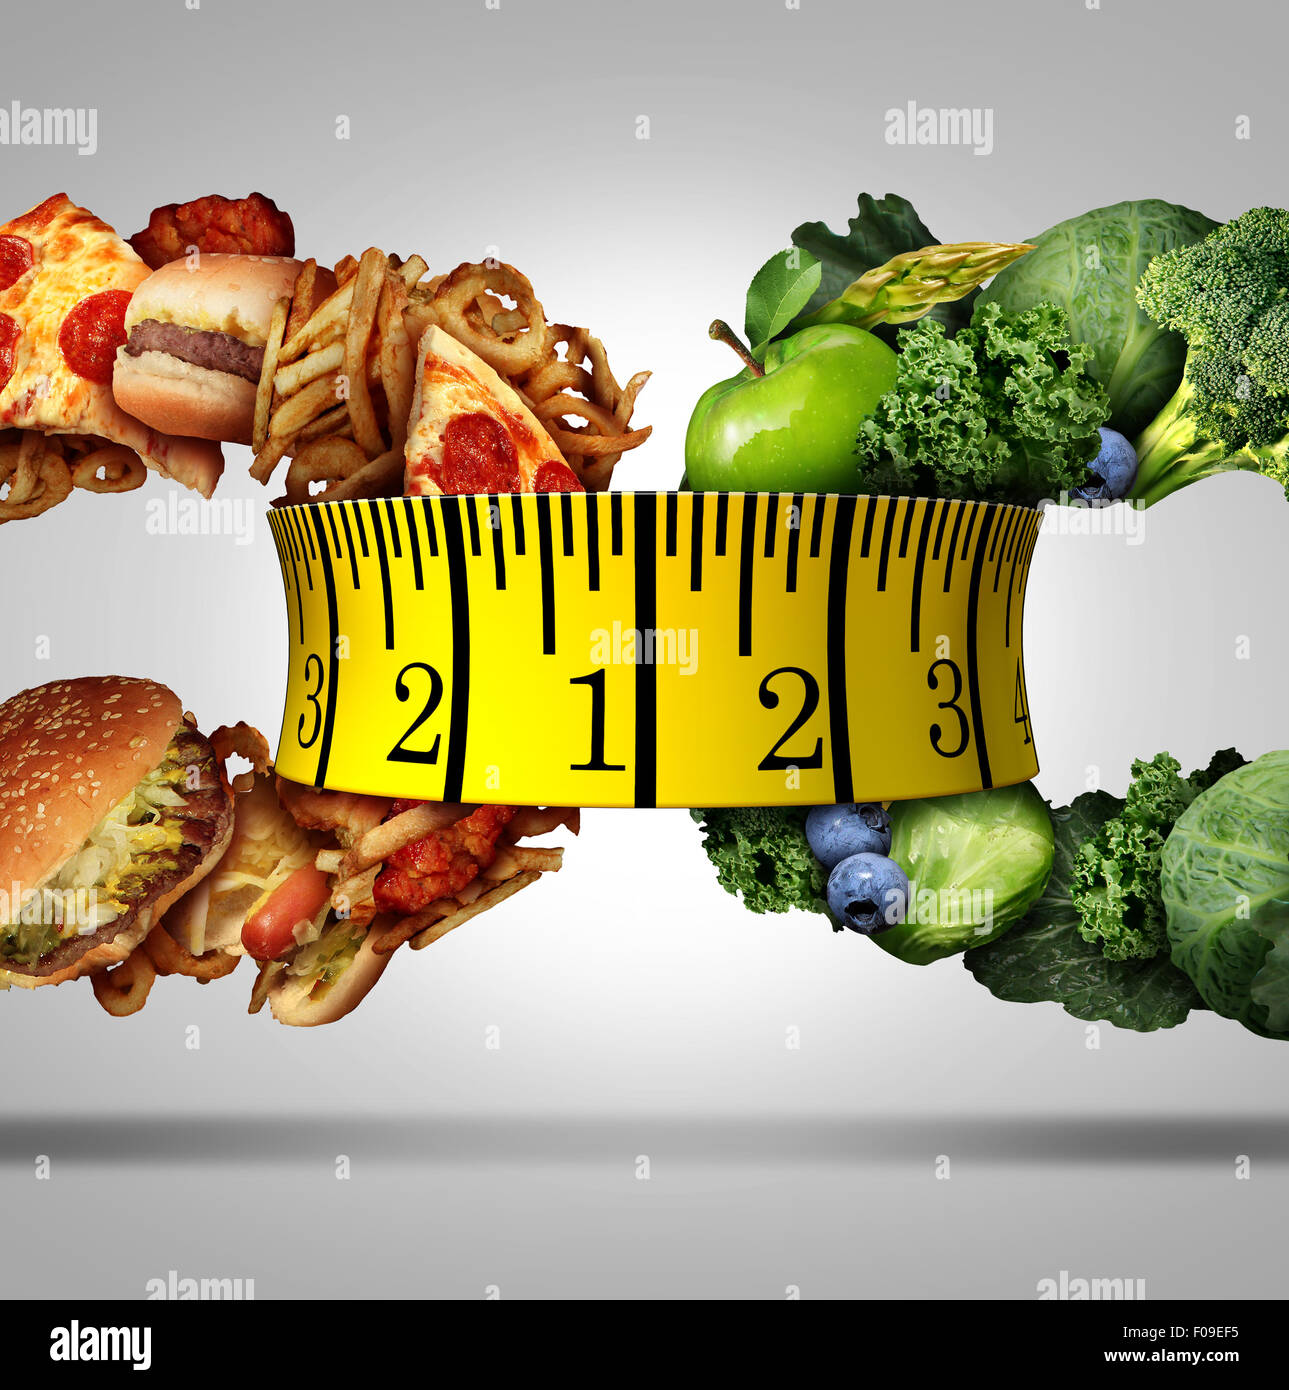 Maßnahme Diät Band Wahl Essenskonzept als Ernährung Lebensstil Symbol als eine Gruppe von Obst und Gemüse und fettigen Junk-Food als ein Kettenglied geformt durch menschliche Fitness Messgeräte miteinander verknüpft. Stockfoto